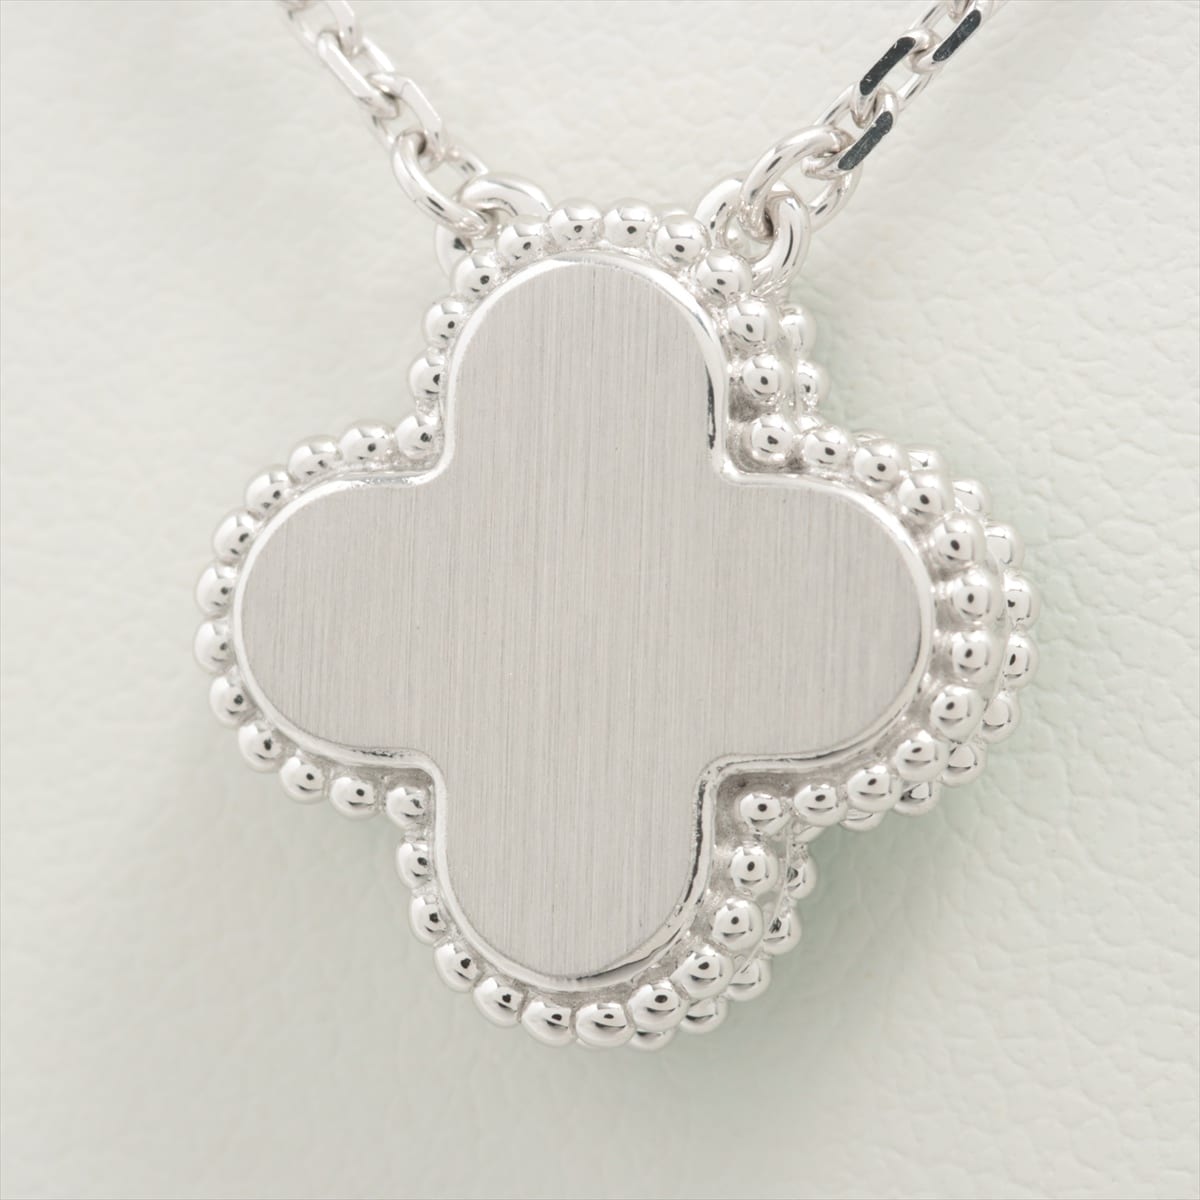 Van Cleef & Arpels Vintage Alhambra Sable diamond Necklace 750(WG) 7.0g